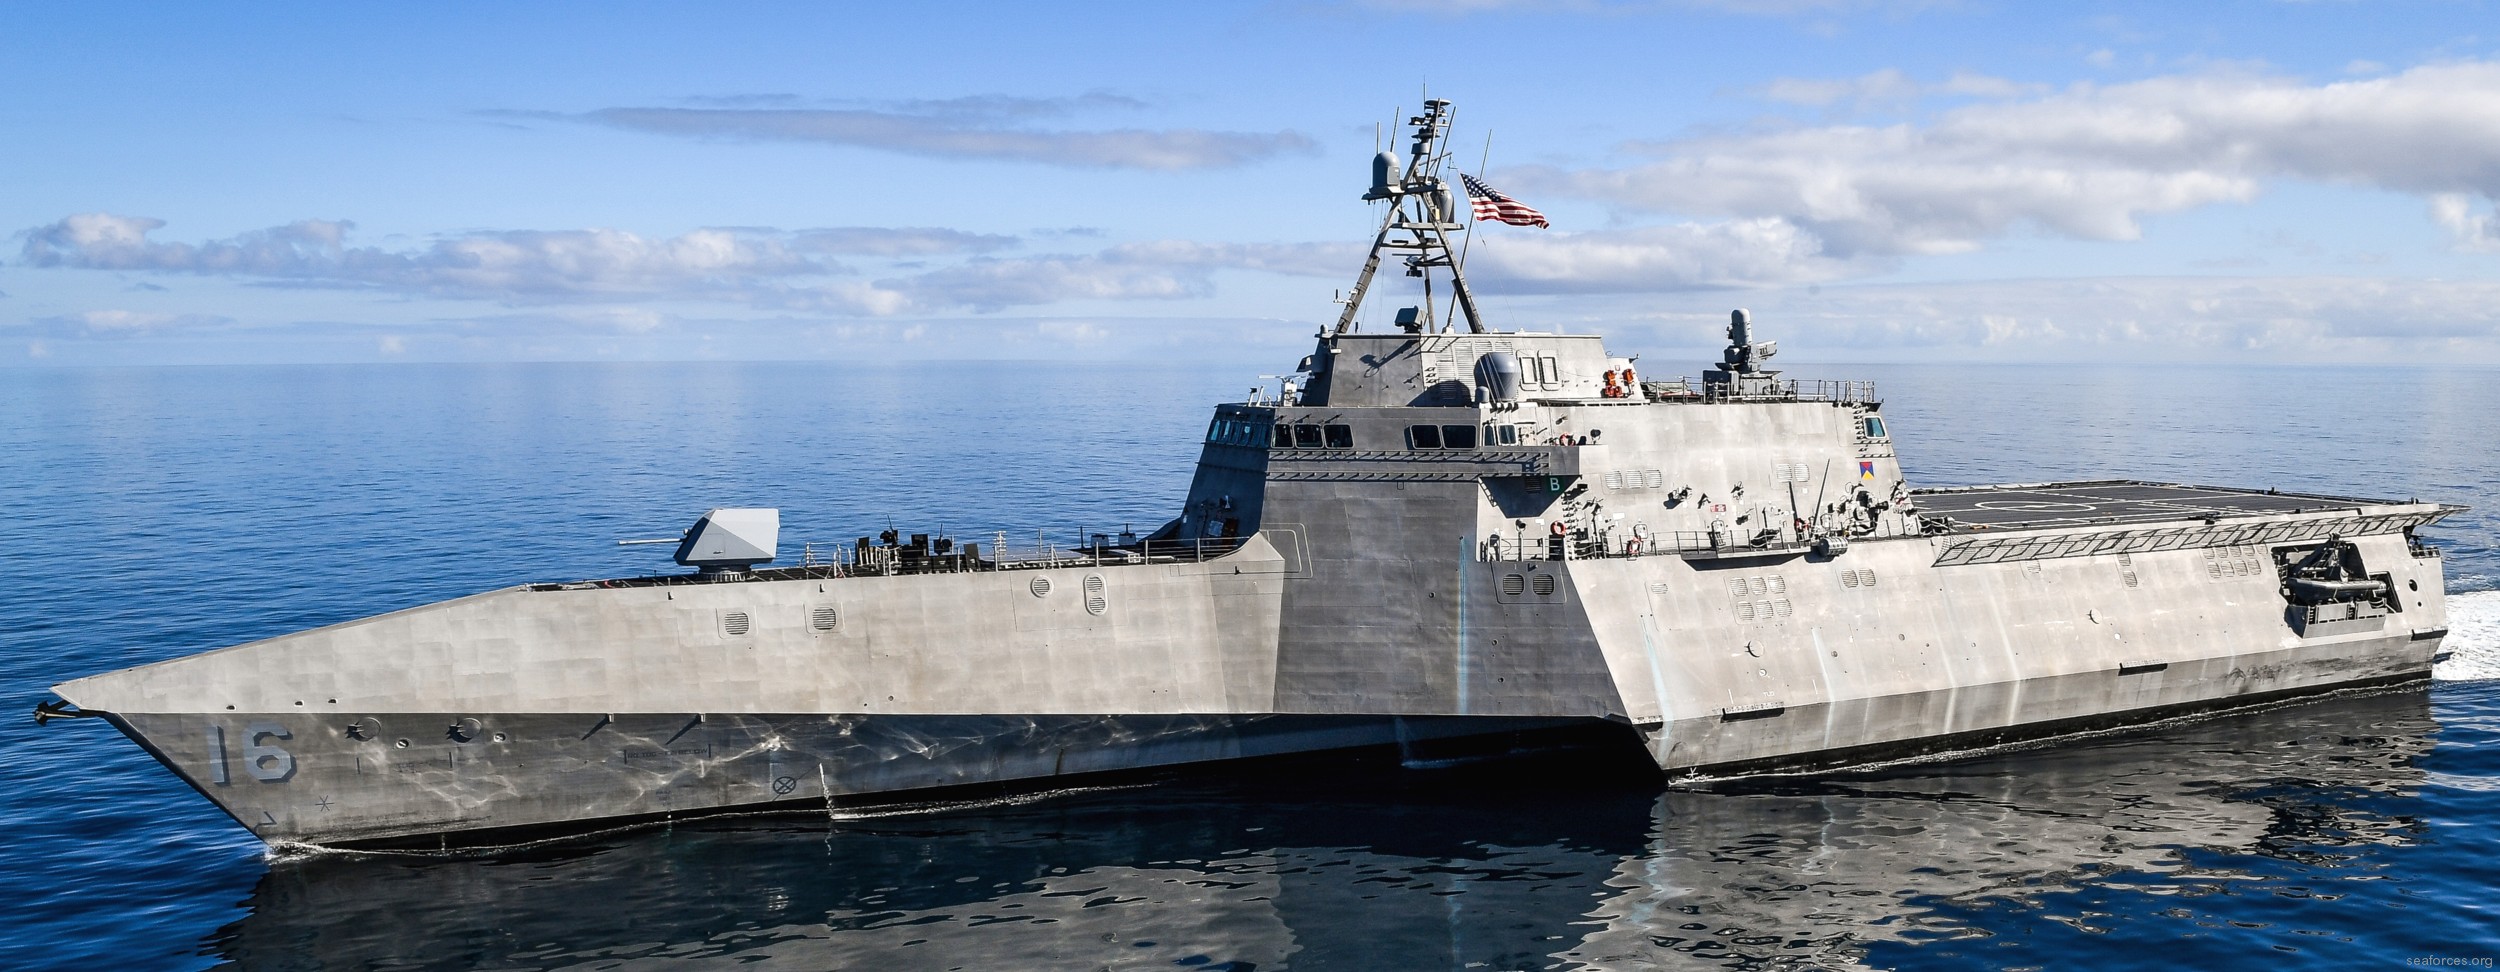 lcs-16 uss tulsa littoral combat ship independence class us navy 18